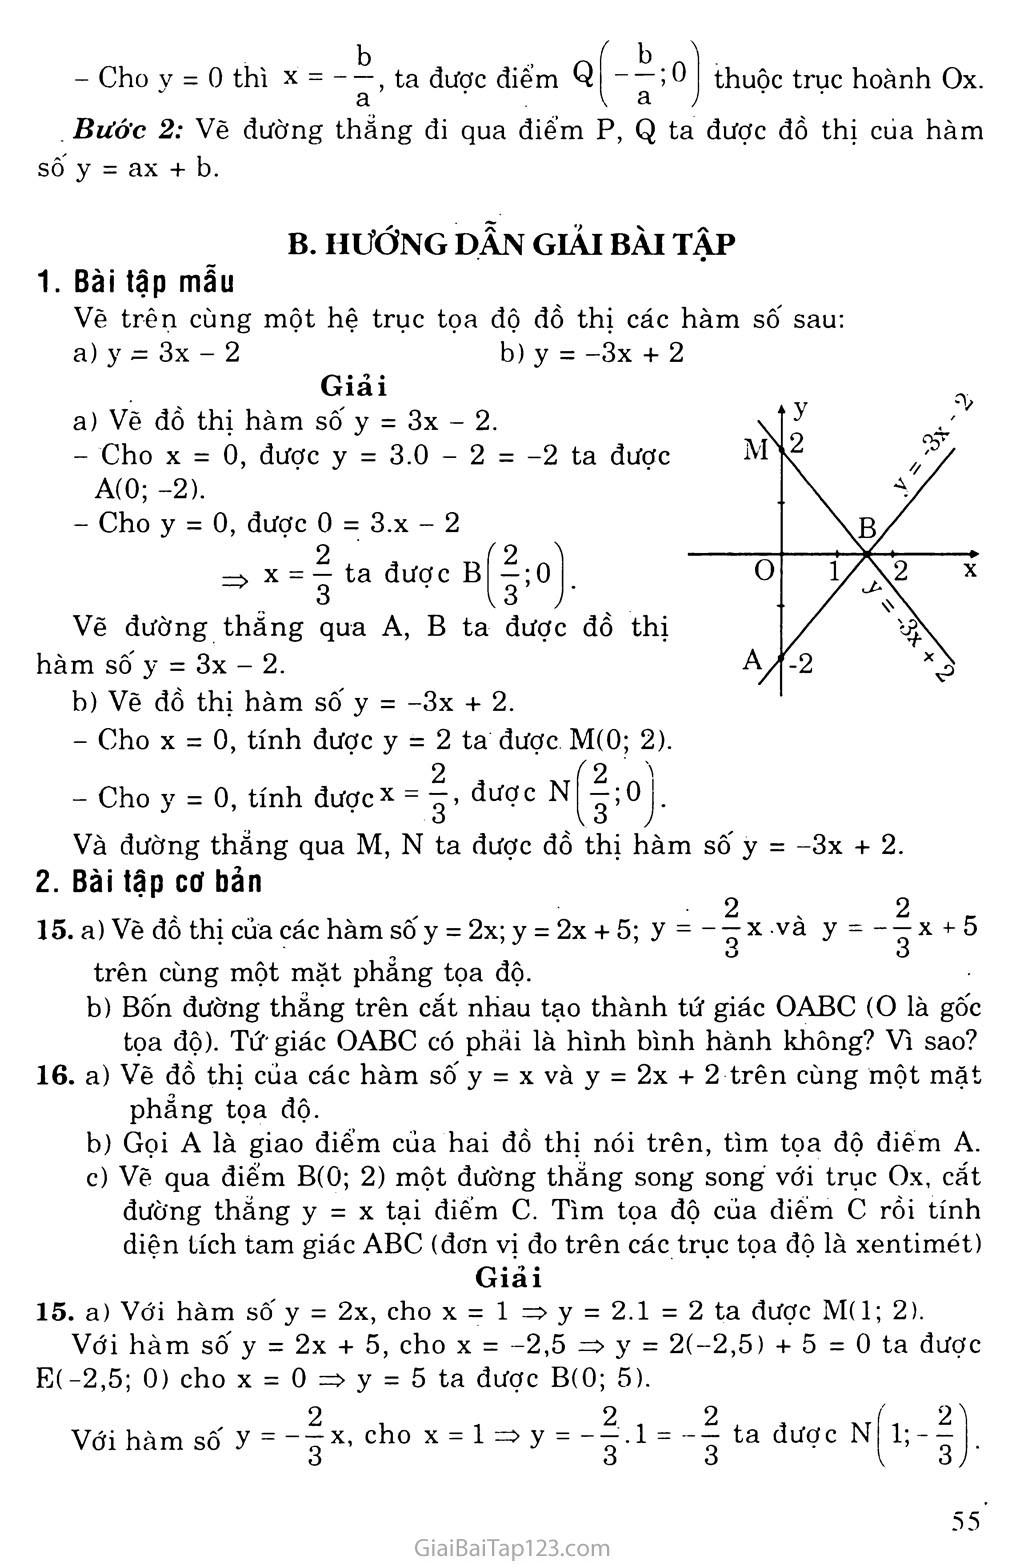 Bài 3. Đồ thị của hàm số y = ax + b (a khác 0) trang 2